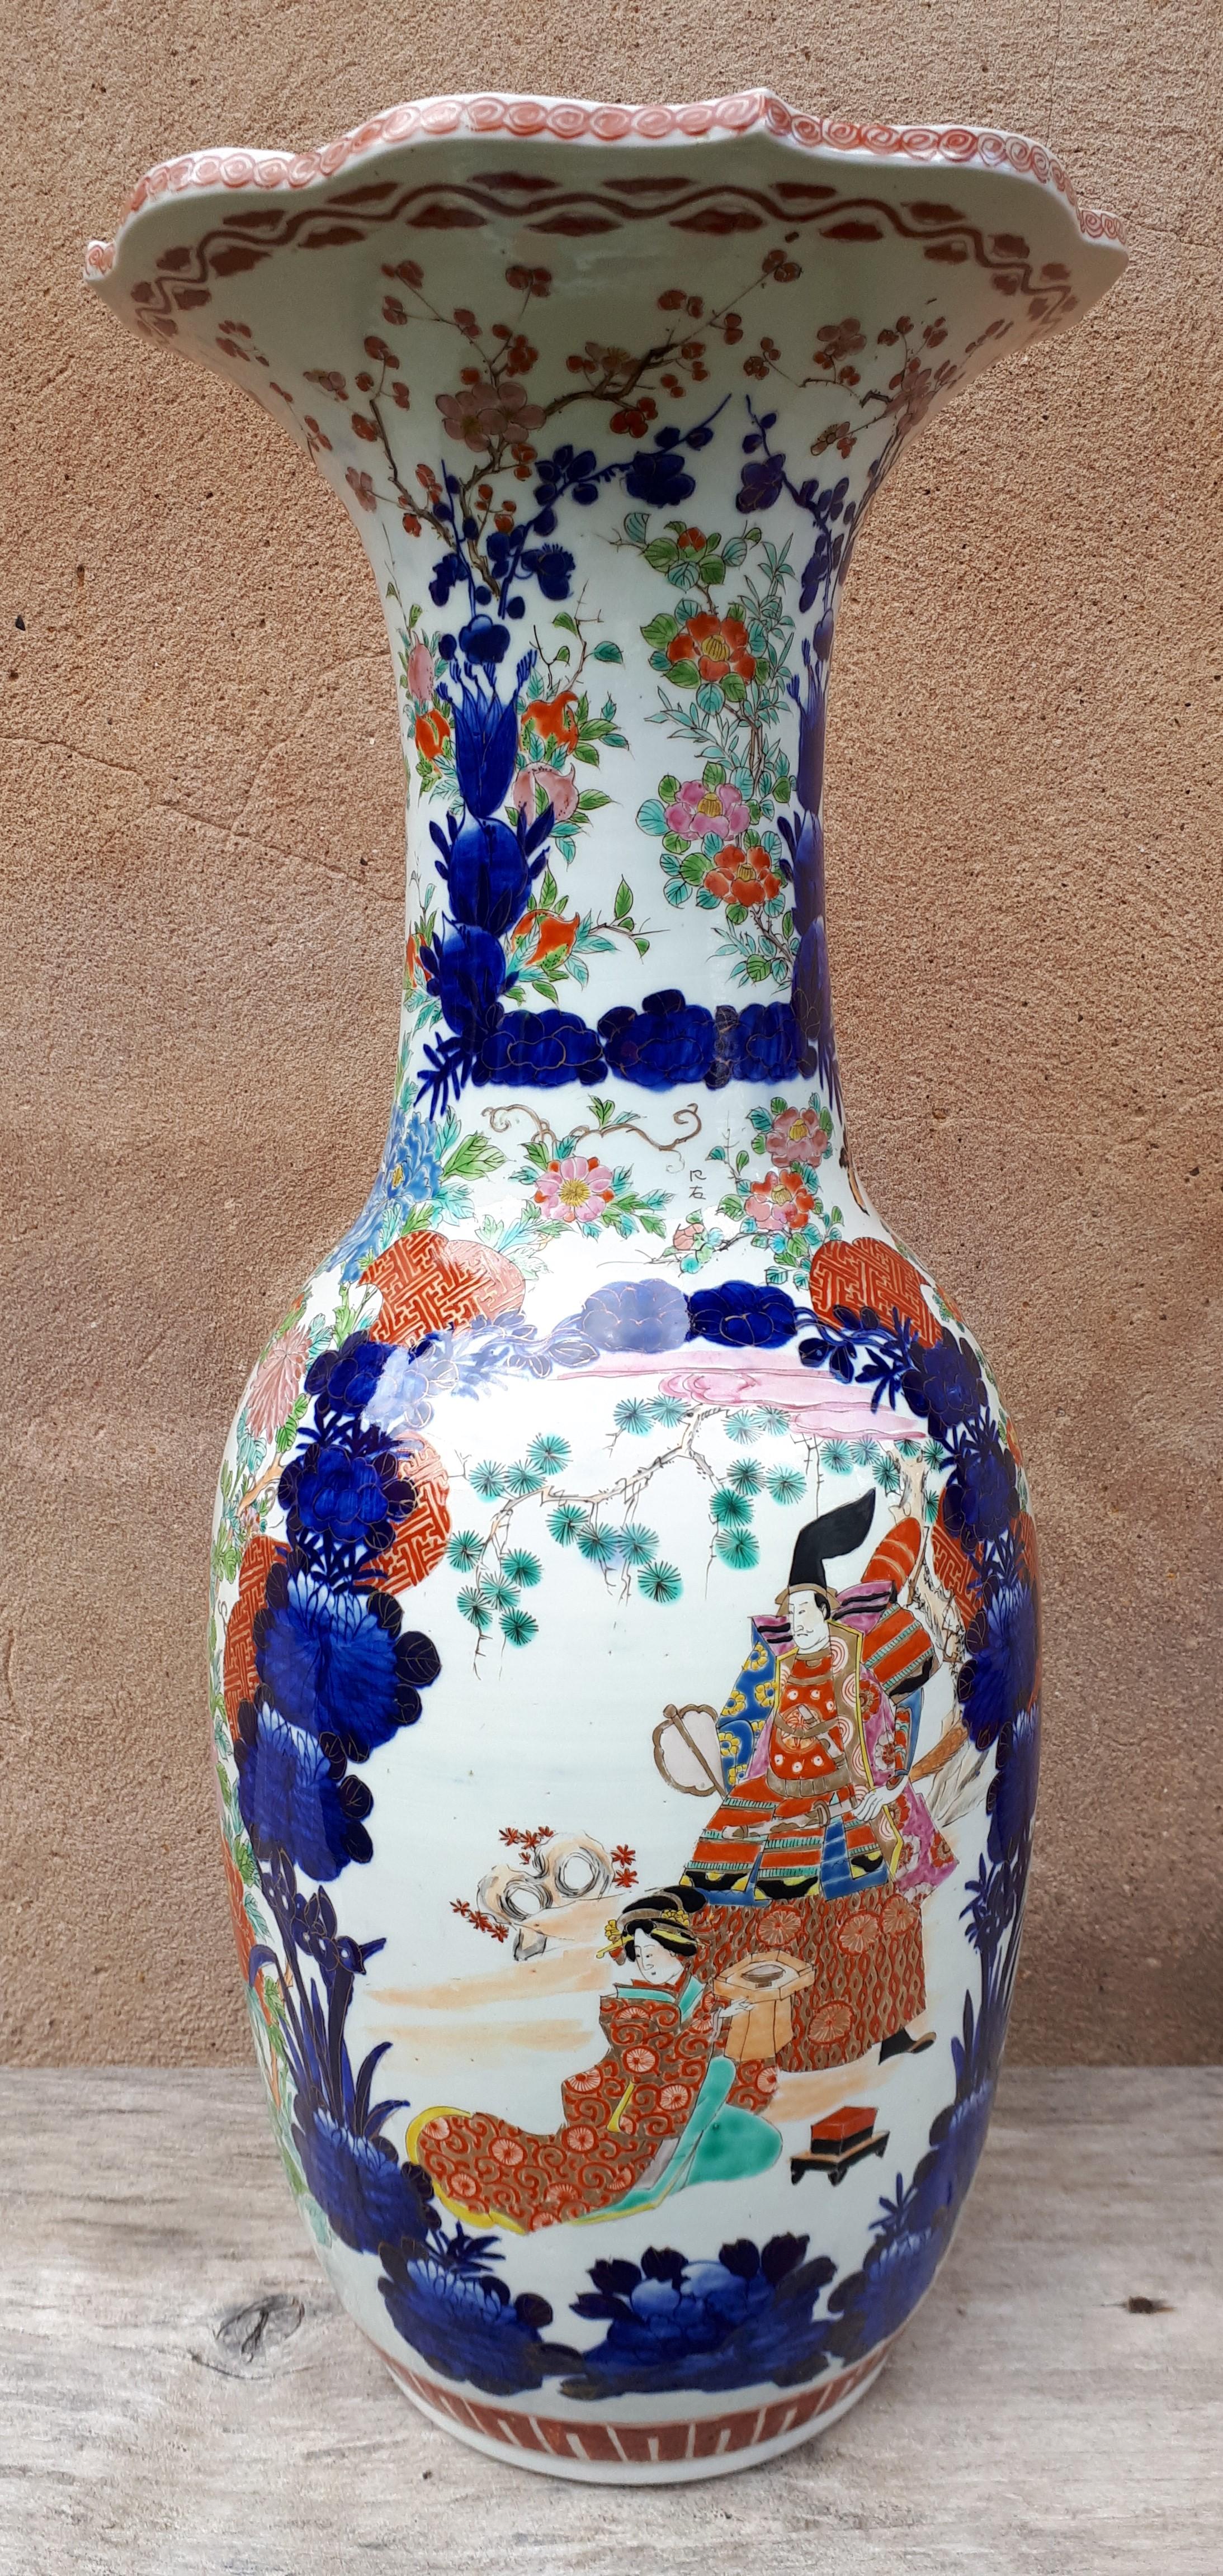 Bedeutende Vase aus Imari-Porzellan mit blauem, korallenrotem und polychromem Dekor, mit vergoldeten Highlights, Figuren in Reserven, Blumen und Schmetterlingen.
Höhe 63cm !
Signiert 